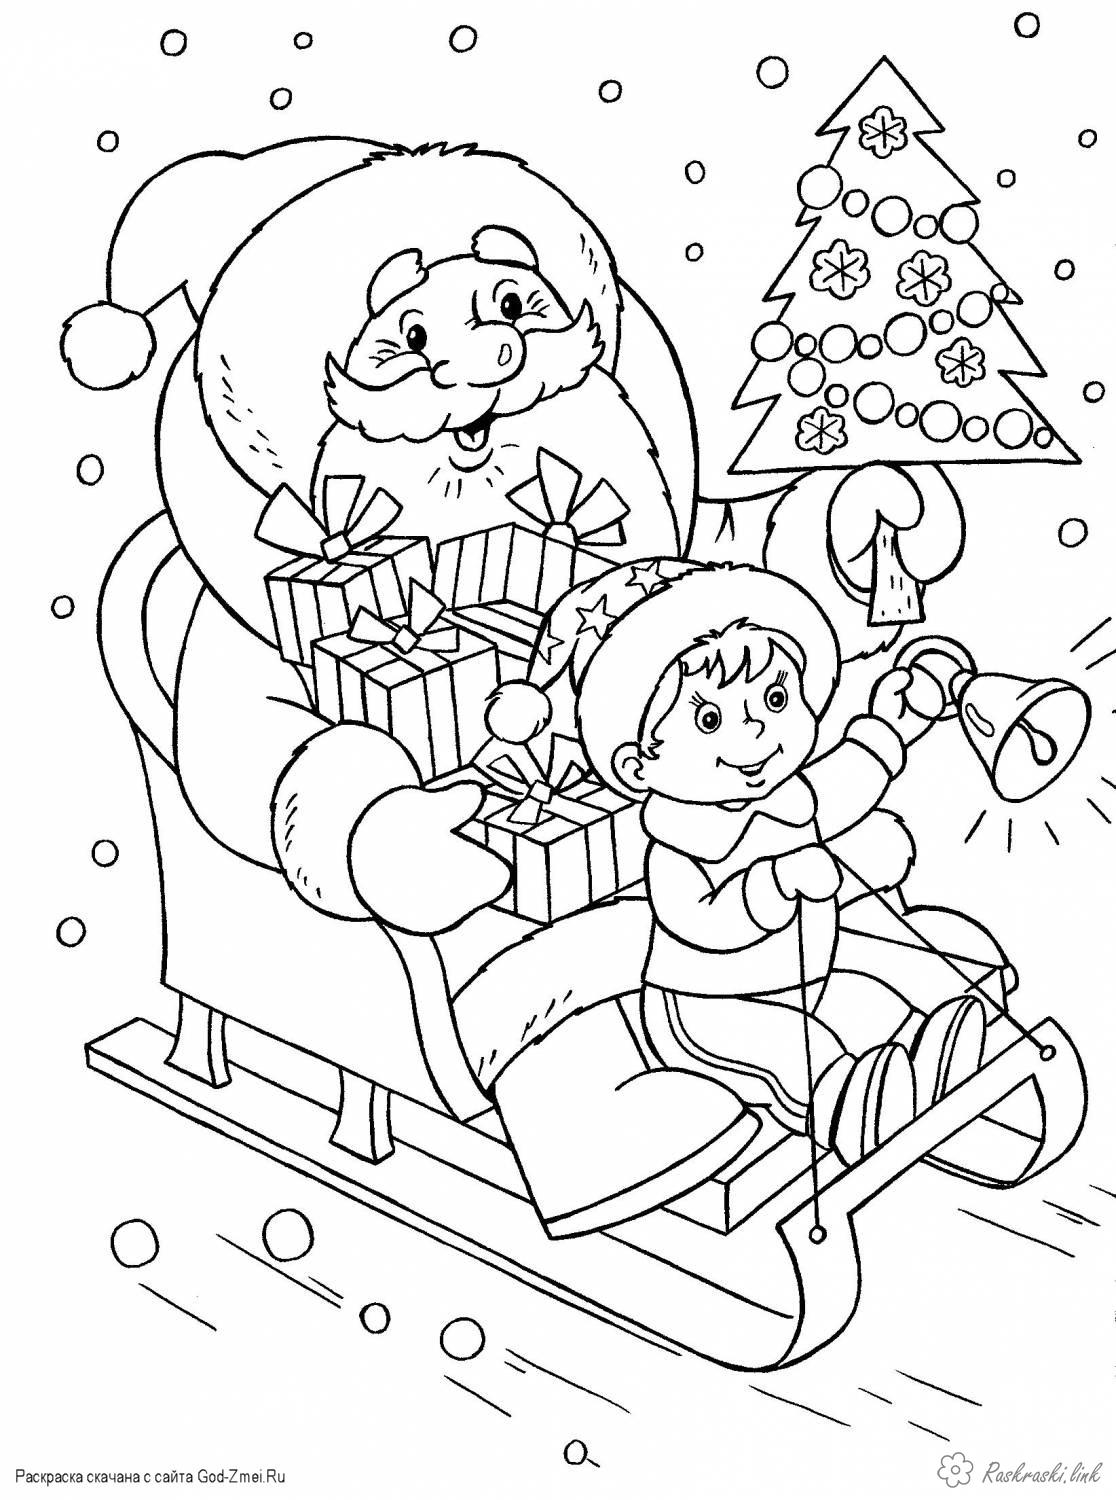 Розмальовки подарунками Дитяча новорічна розфарбування, дід мороз на санях з подарунками